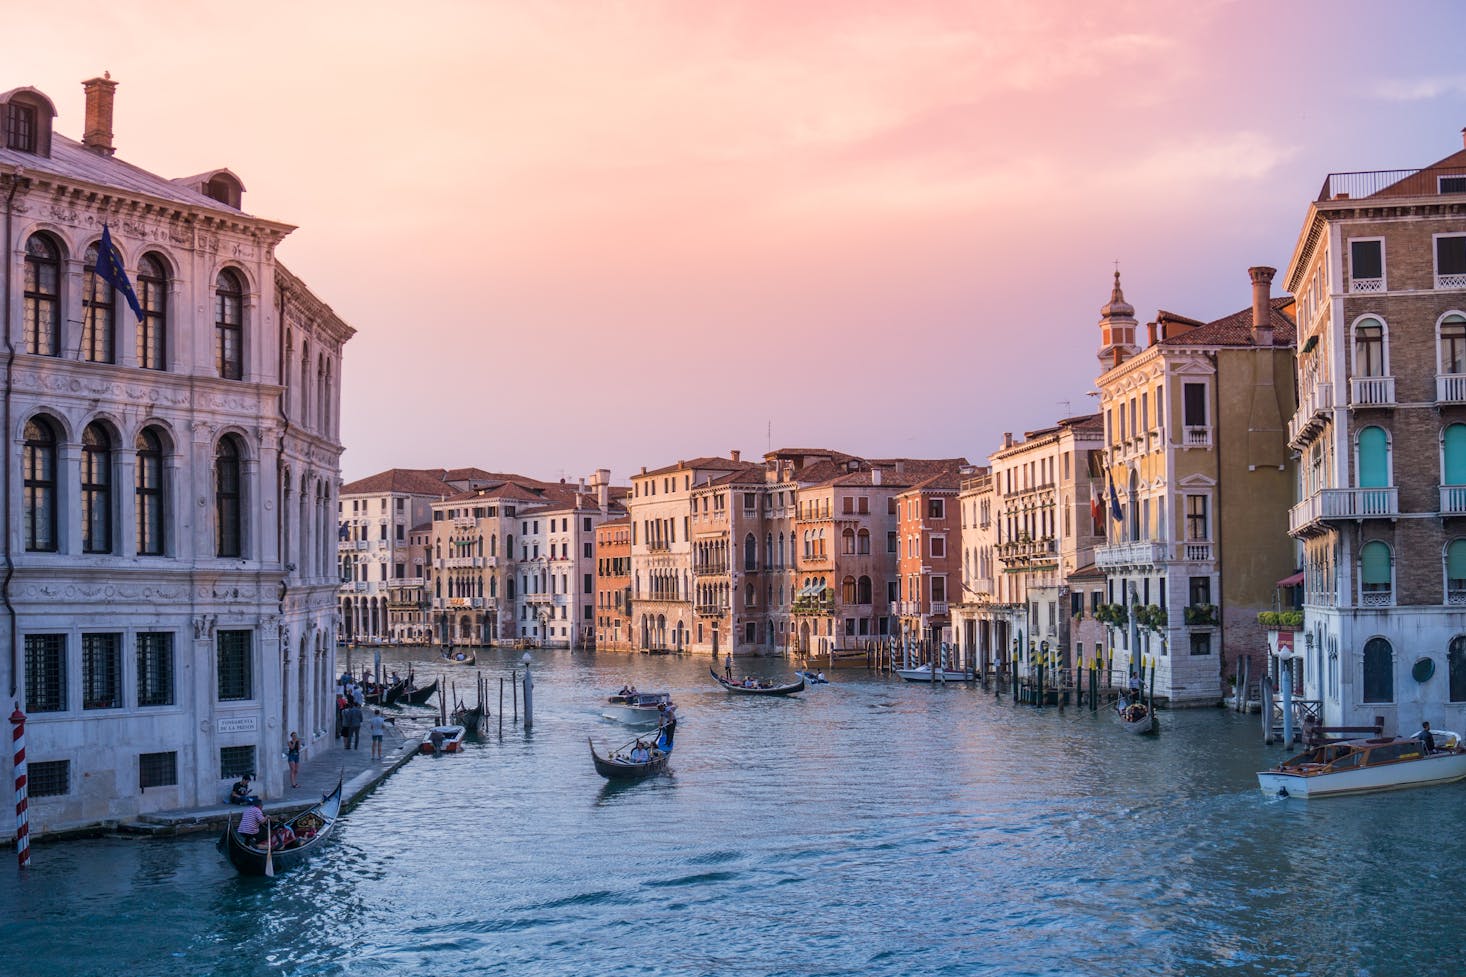 gondolas in Venice canal